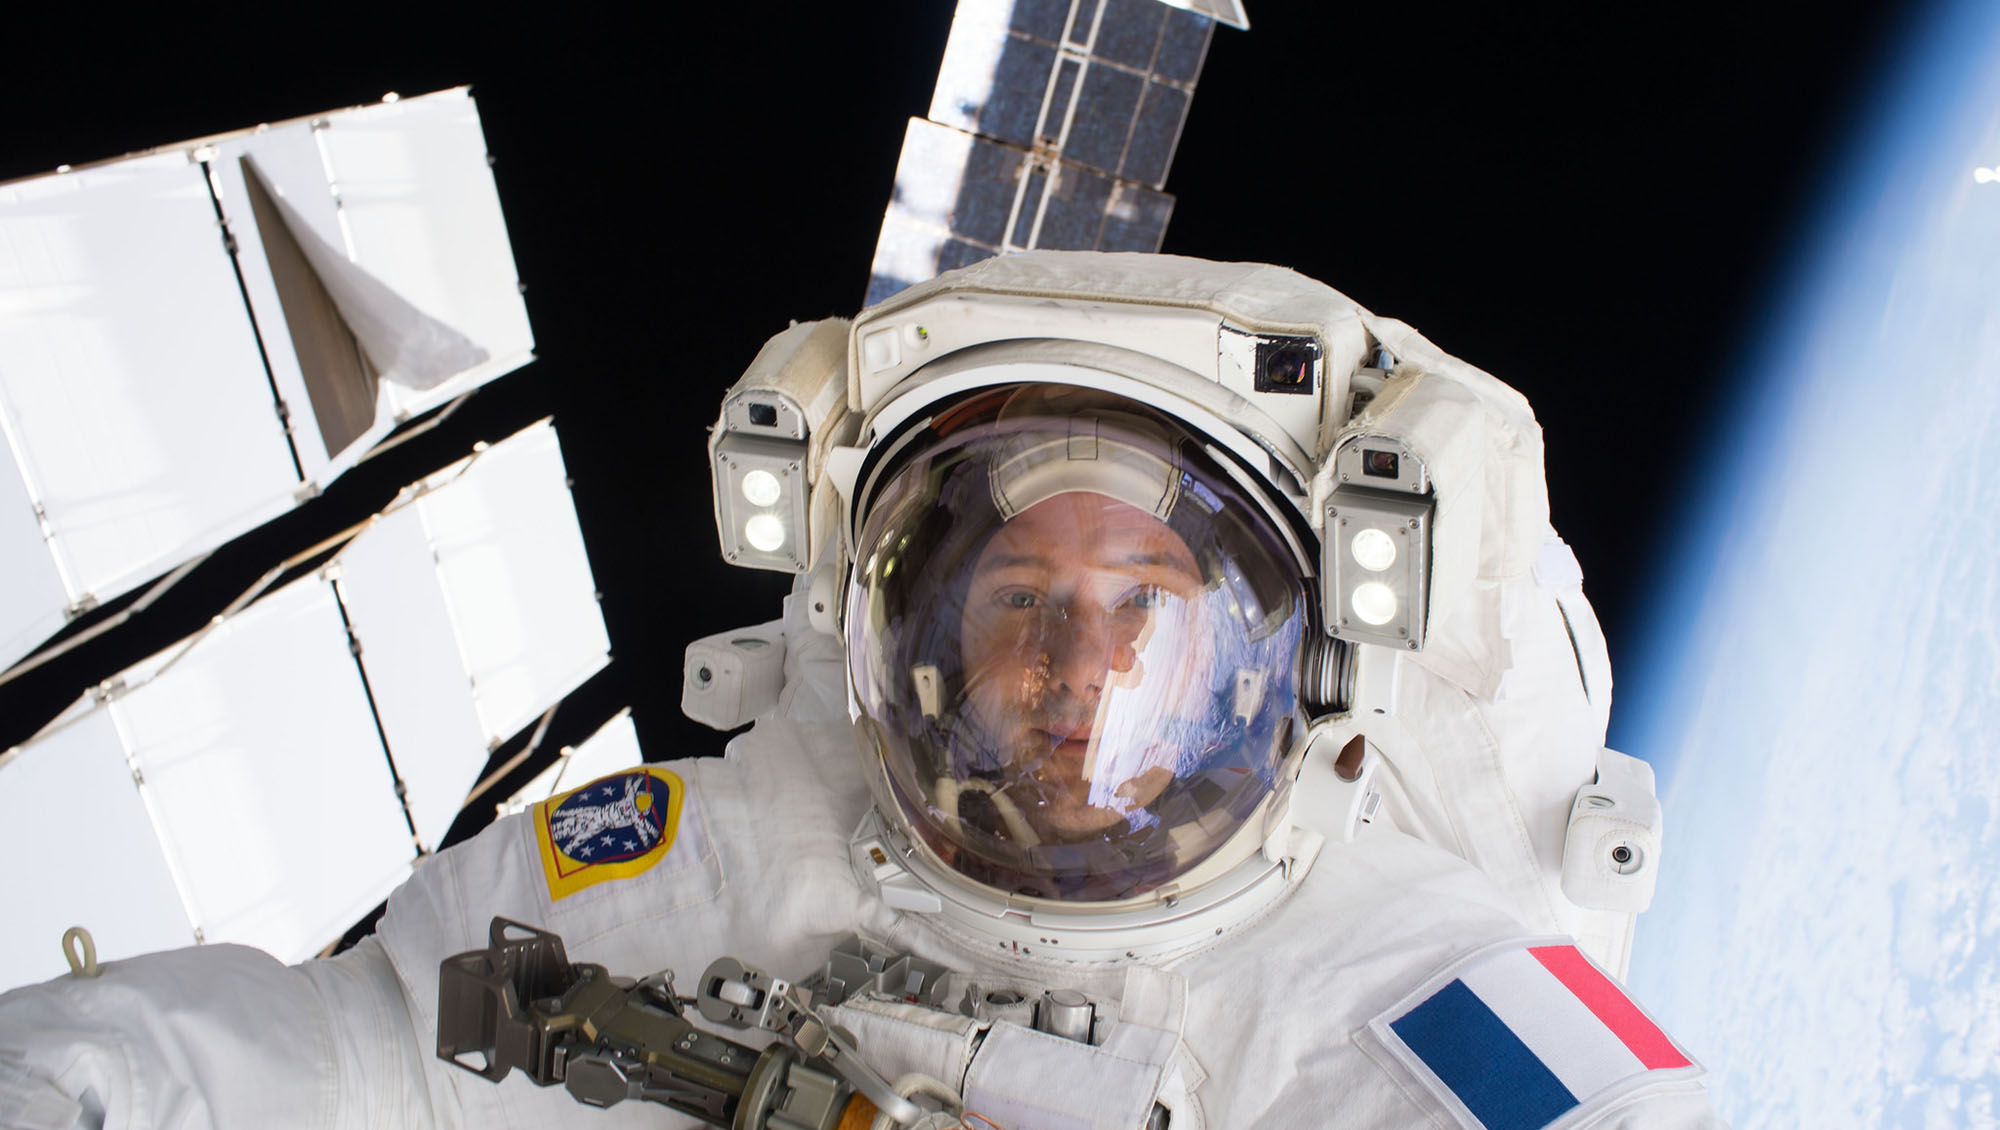 Thomas Pesquet commandera l'ISS, une première pour un Français